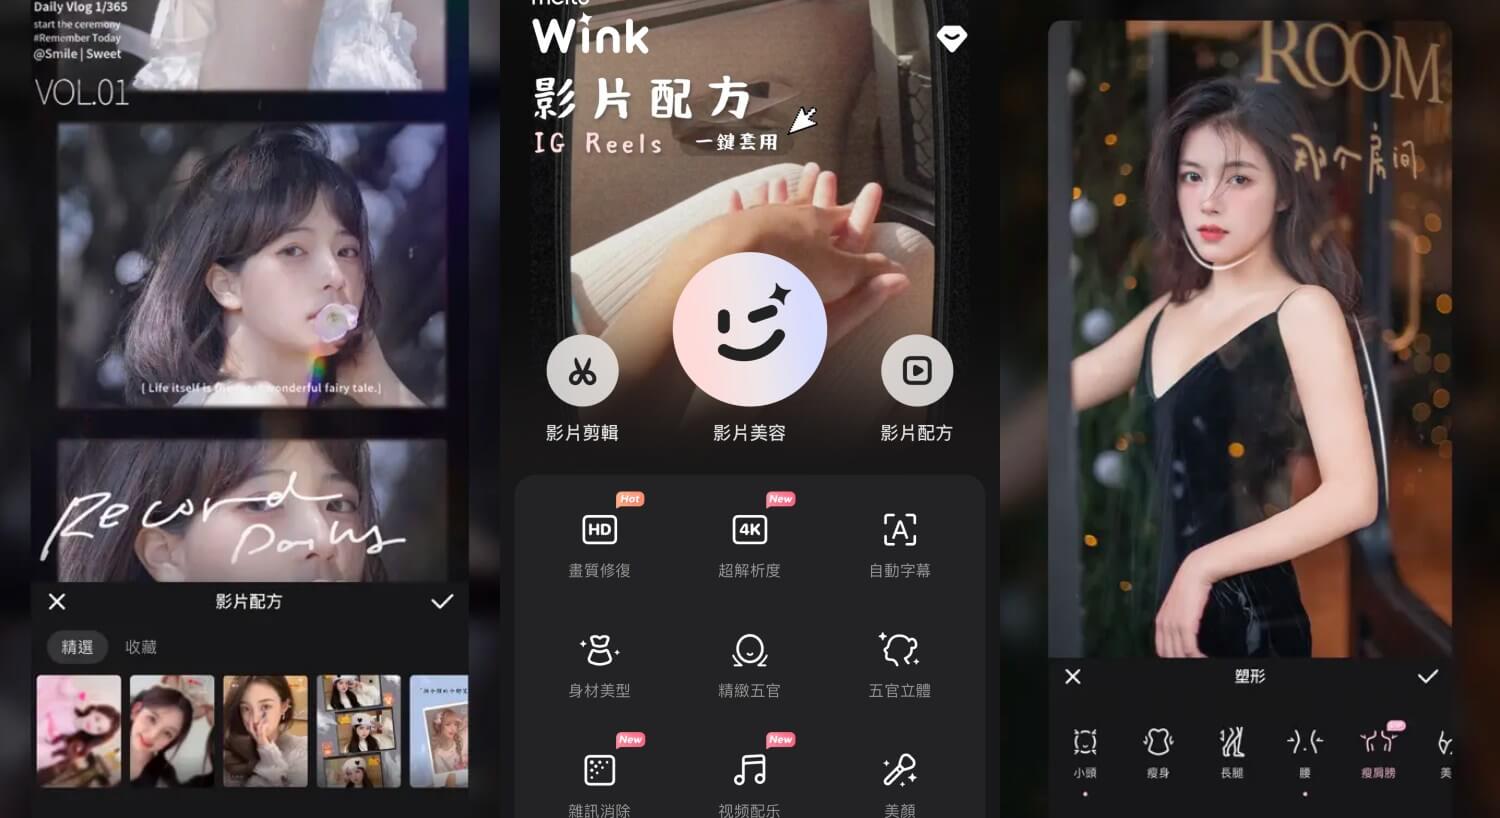 IG 限動剪輯 App - Wink-影片人像美顏&剪輯